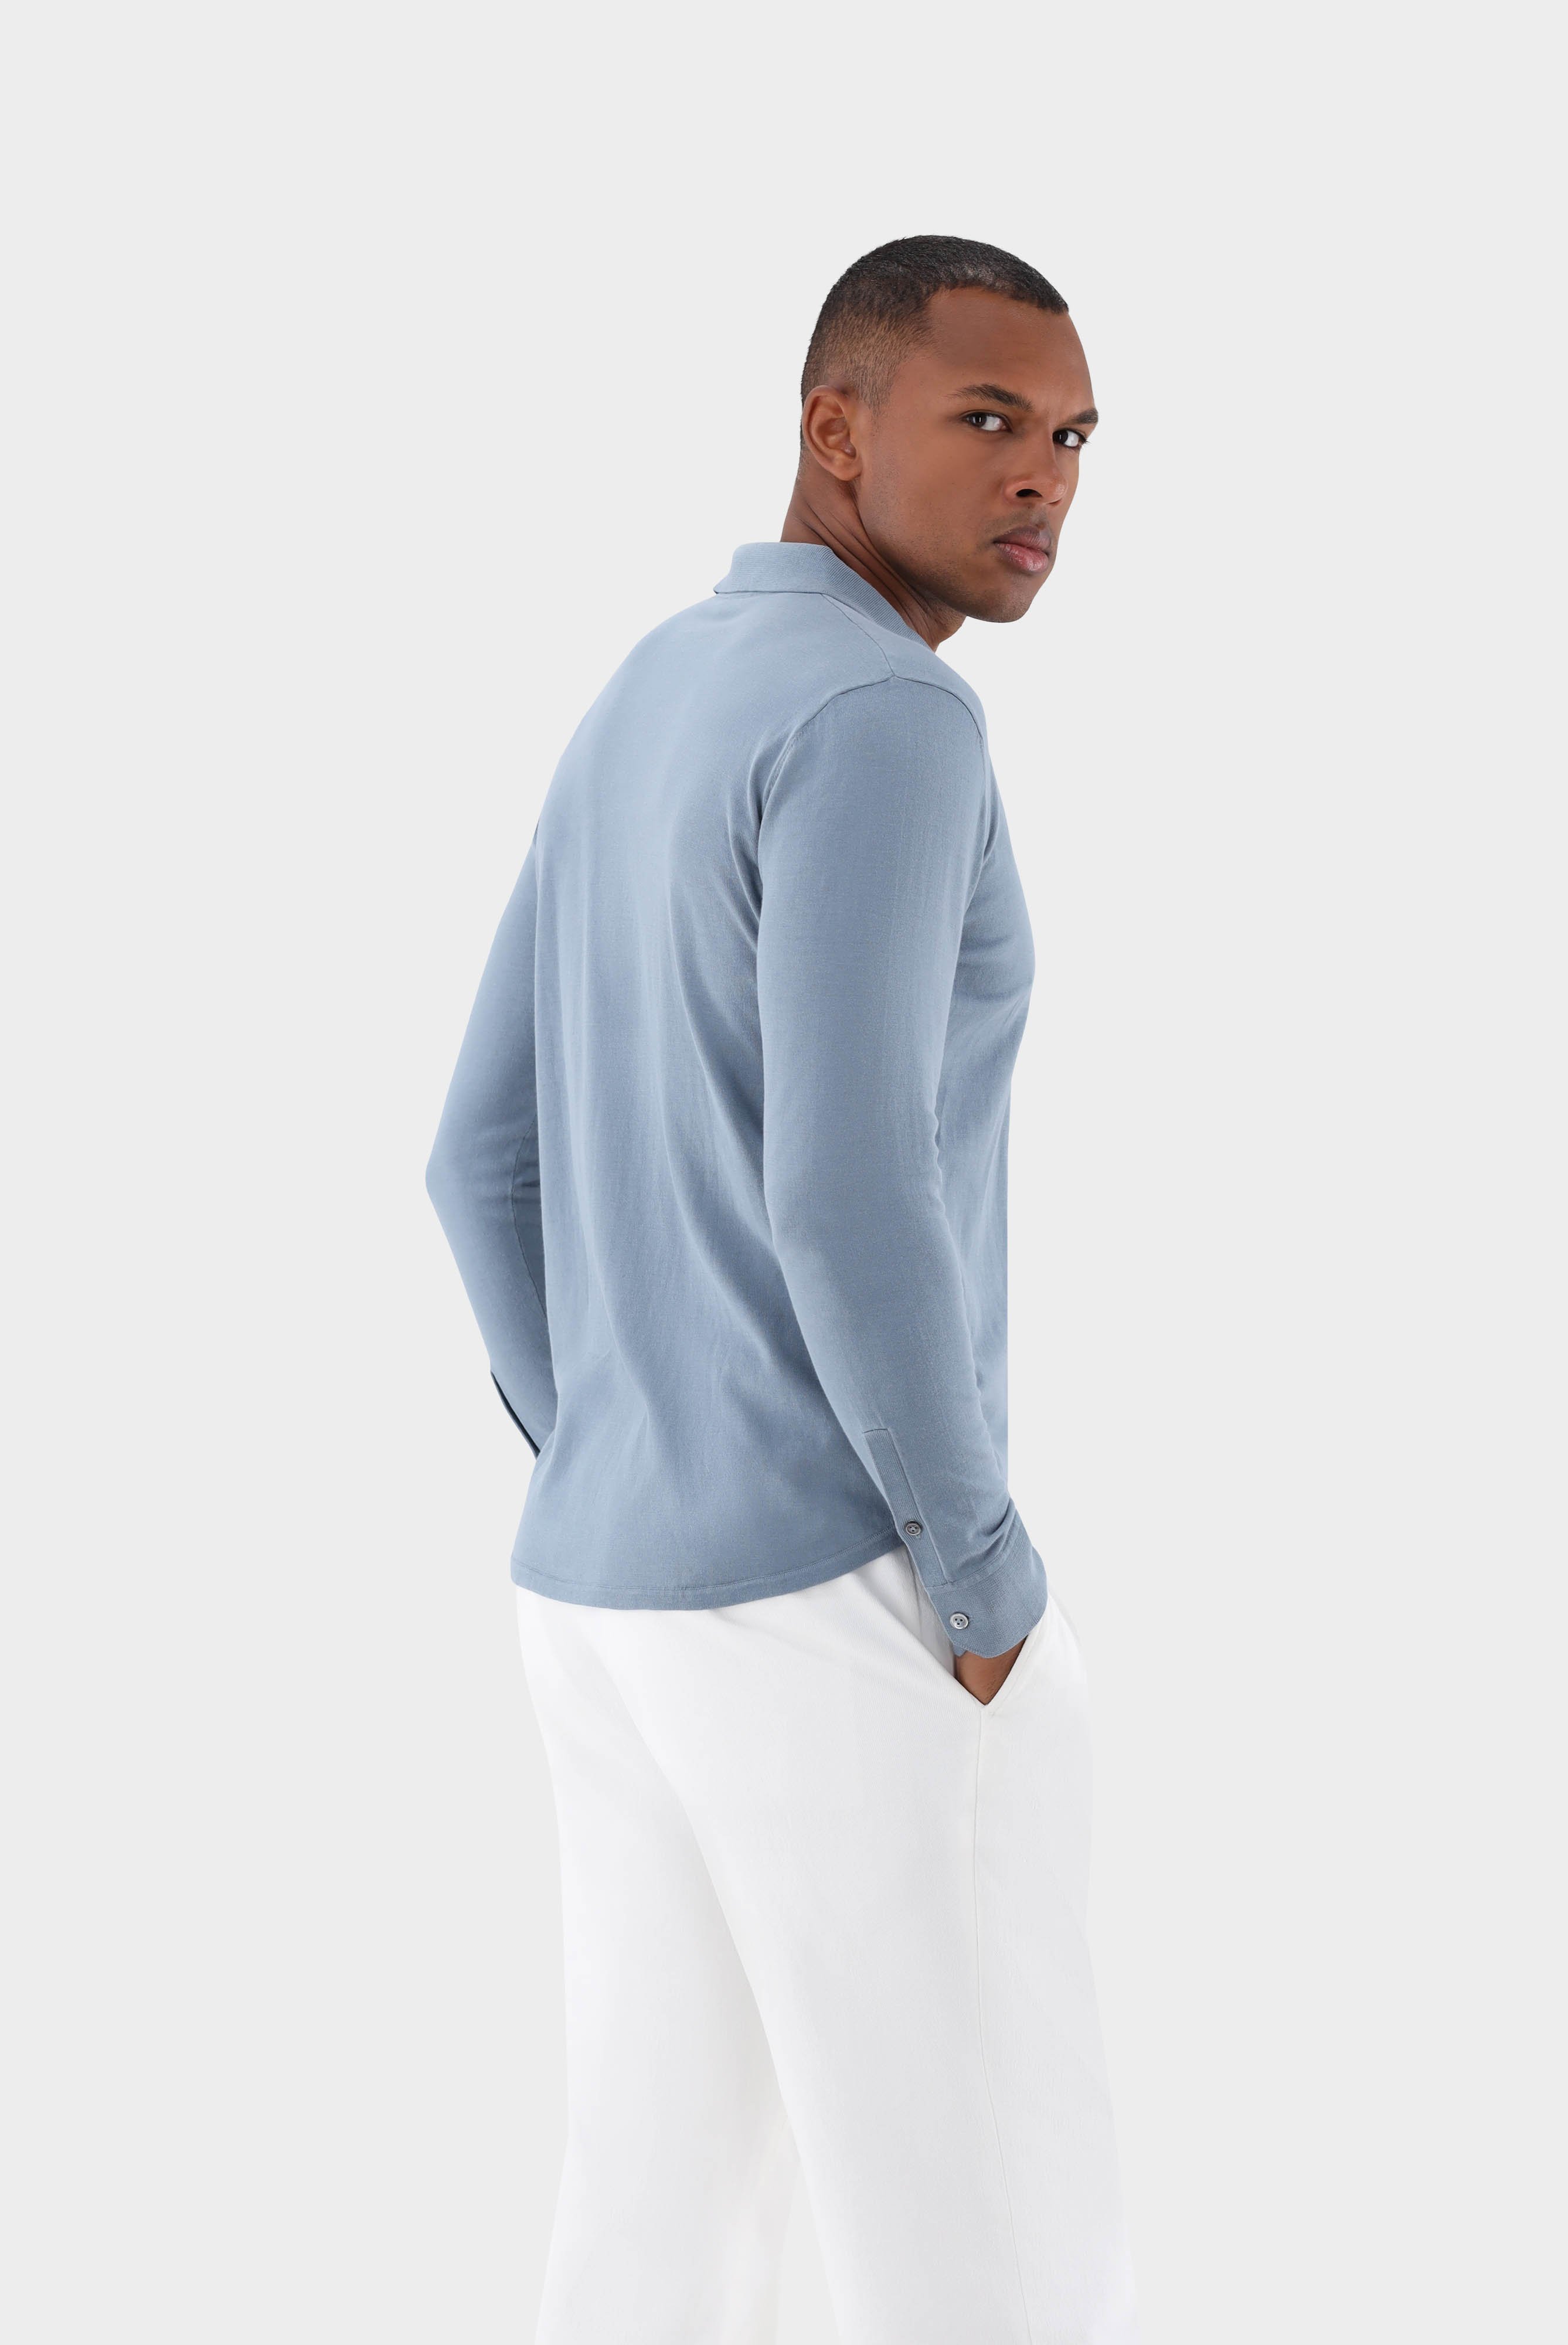 Bügelleichte Hemden+Strick Hemd aus Air Cotton+82.8611..S00174.730.XS